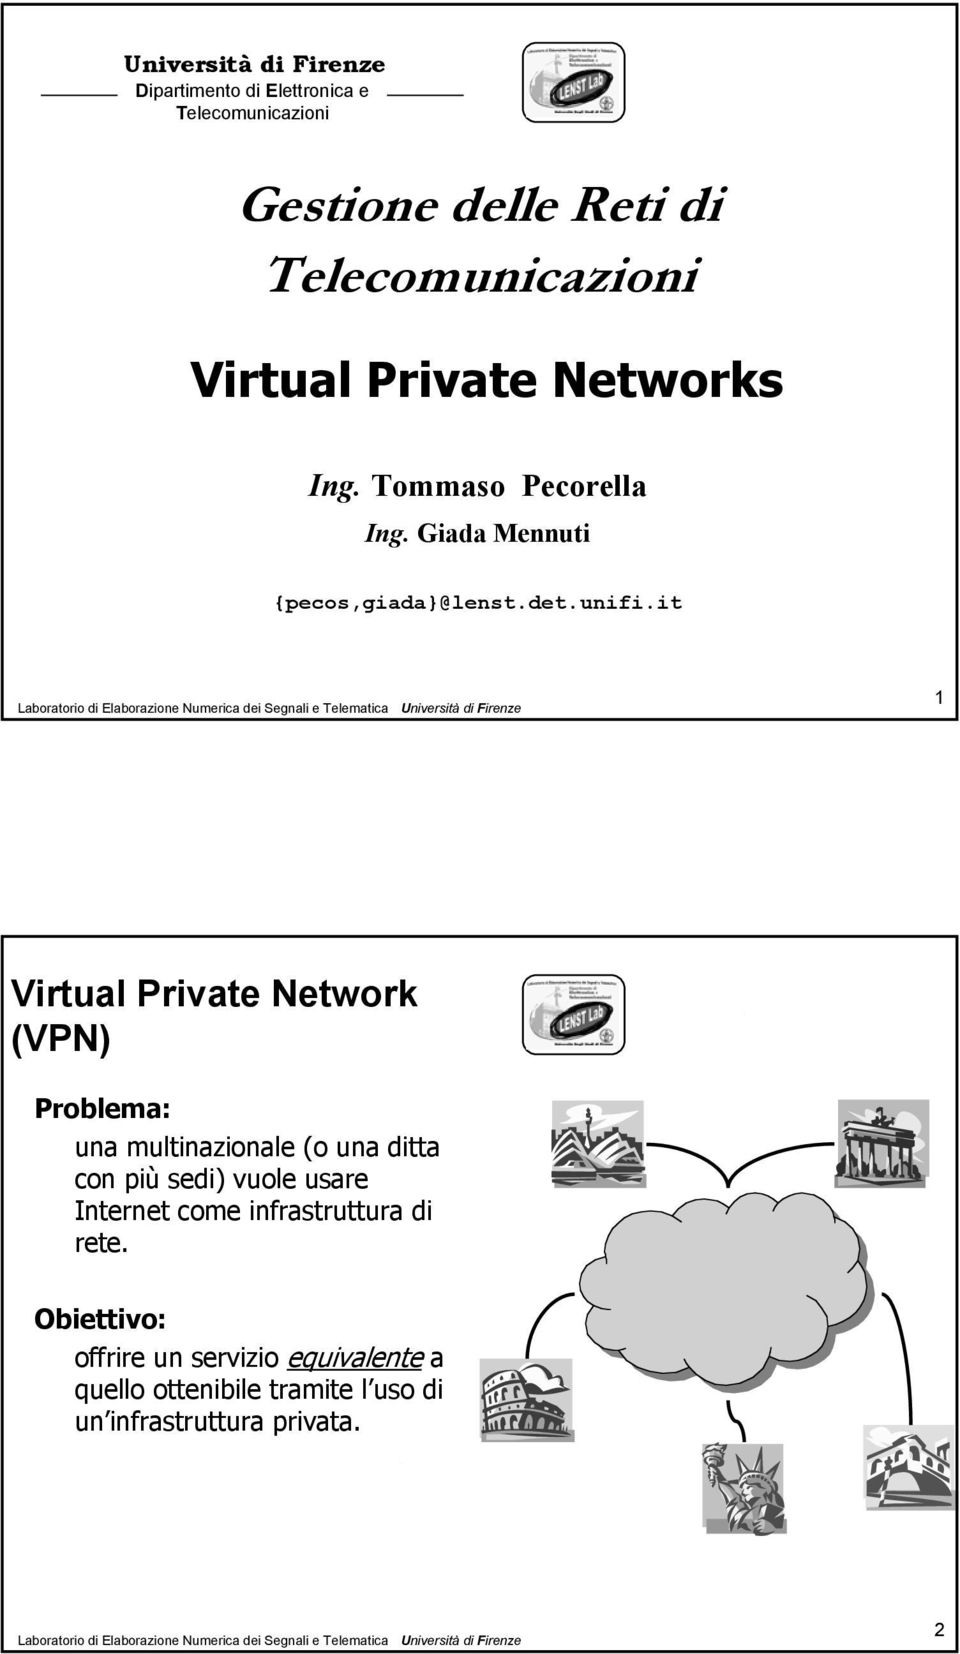 it 1 Virtual Private Network (VPN) Problema: una multinazionale (o una ditta con più sedi) vuole usare Internet